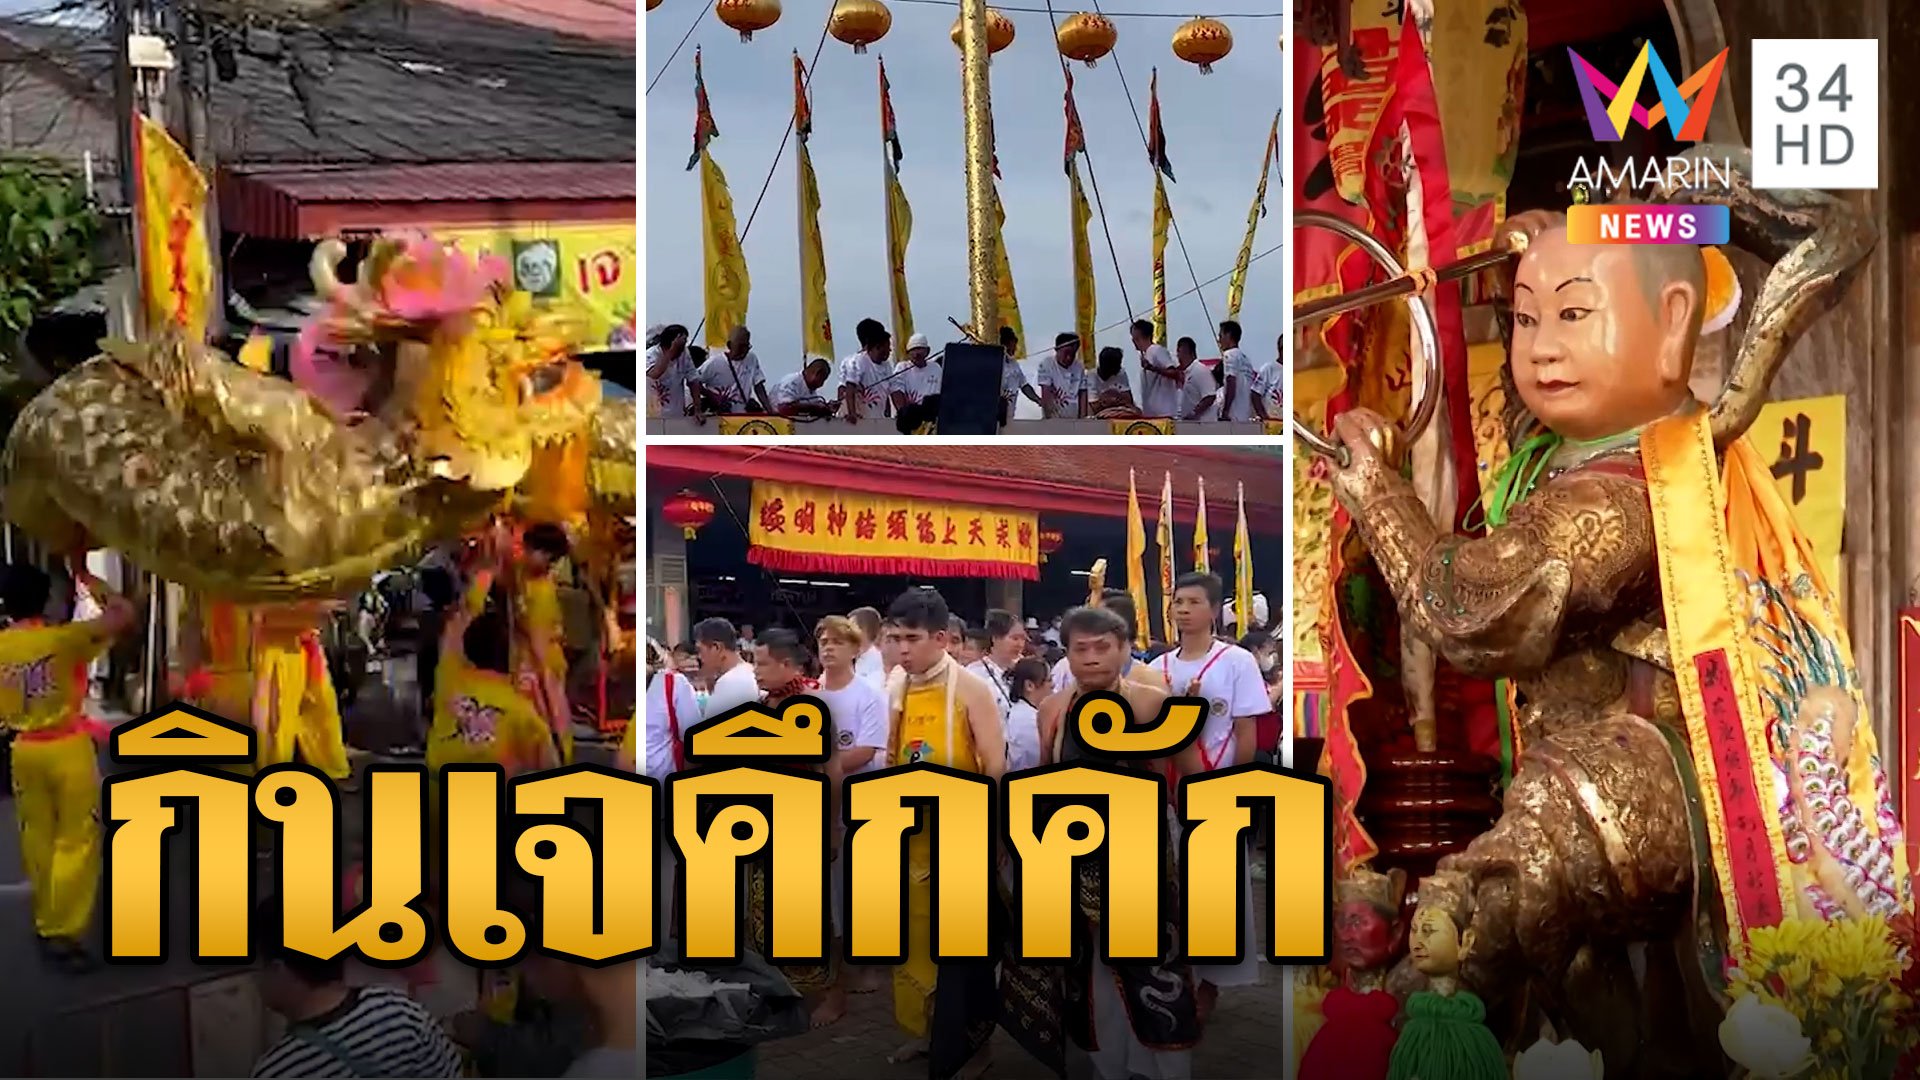 เทศกาลกินเจปราจีนบุรี คึกคัก เชิดมังกร-สิงโต เปิดพิธียกเสาโกเต้ง | ข่าวเที่ยงอมรินทร์ | 15 ต.ค. 66 | AMARIN TVHD34